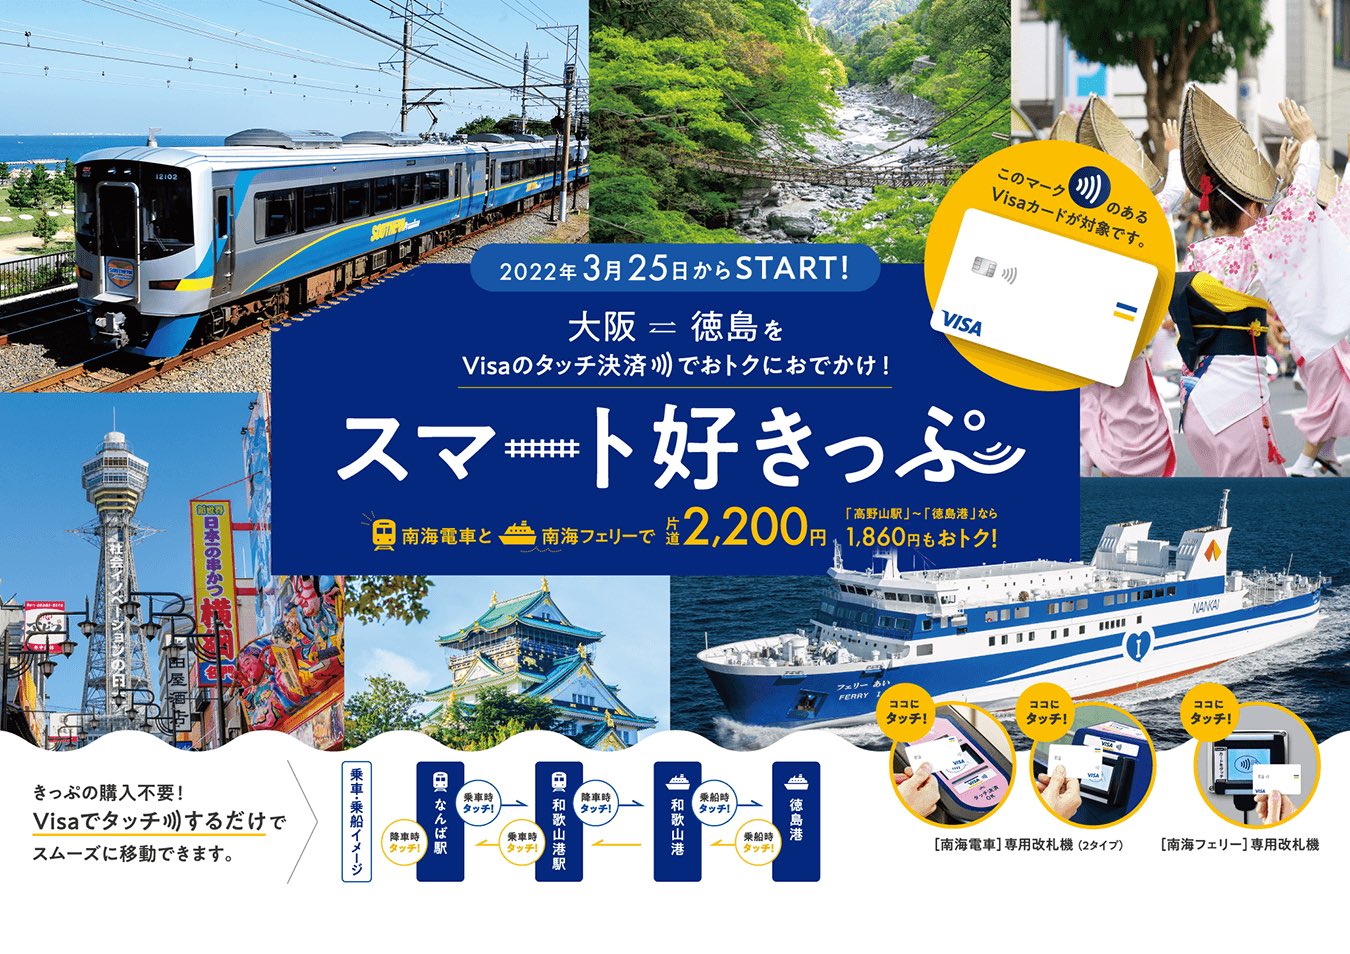 南海電鉄 公式 Nankai Electric Railway 大阪 徳島がvisaのタッチ決済で2 0円 Visaのタッチ決済で南海電車と南海フェリーの乗り継ぎをご利用いただいた場合に 割引運賃の2 0円でご乗車いただけるサービスが本日からスタート おトクに徳島へ